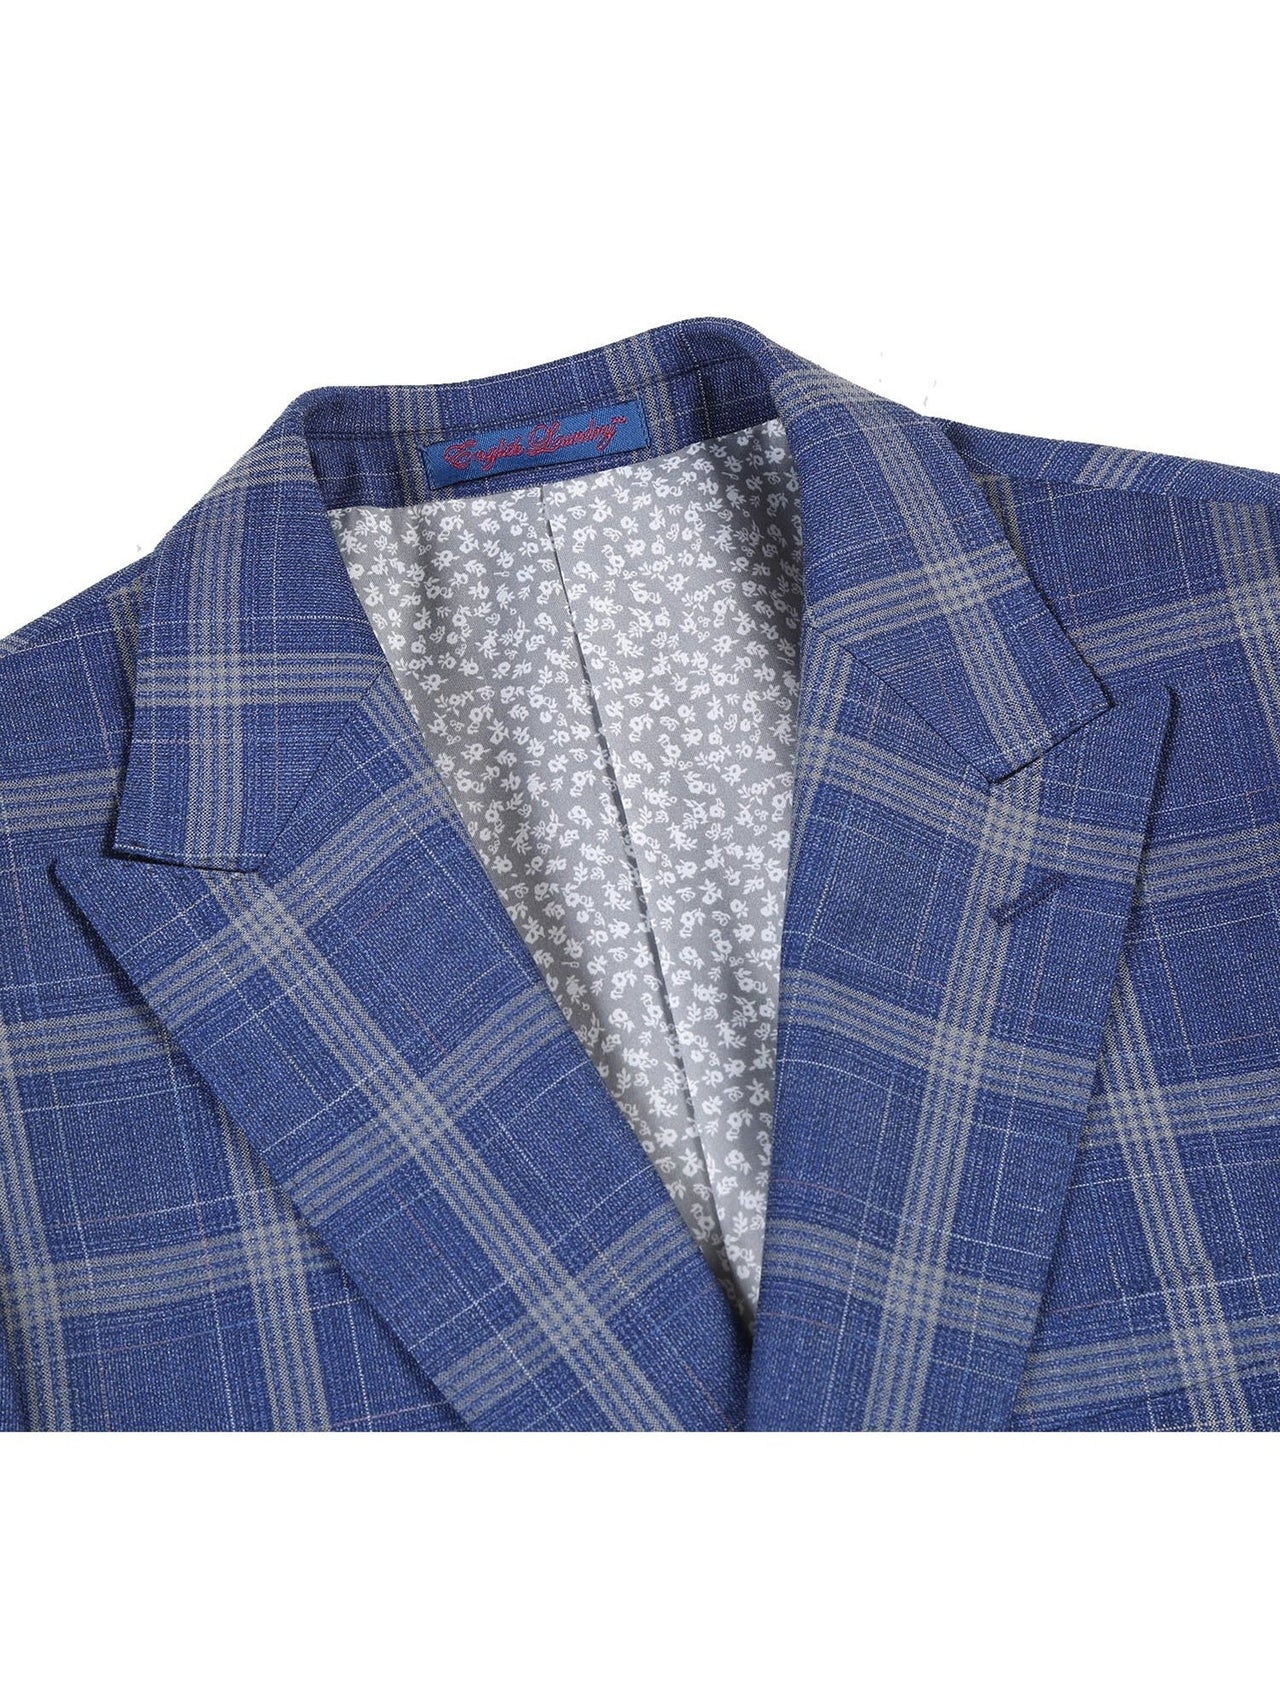 English Laundry Slim Fit Two button Check Peak Lapel Suit